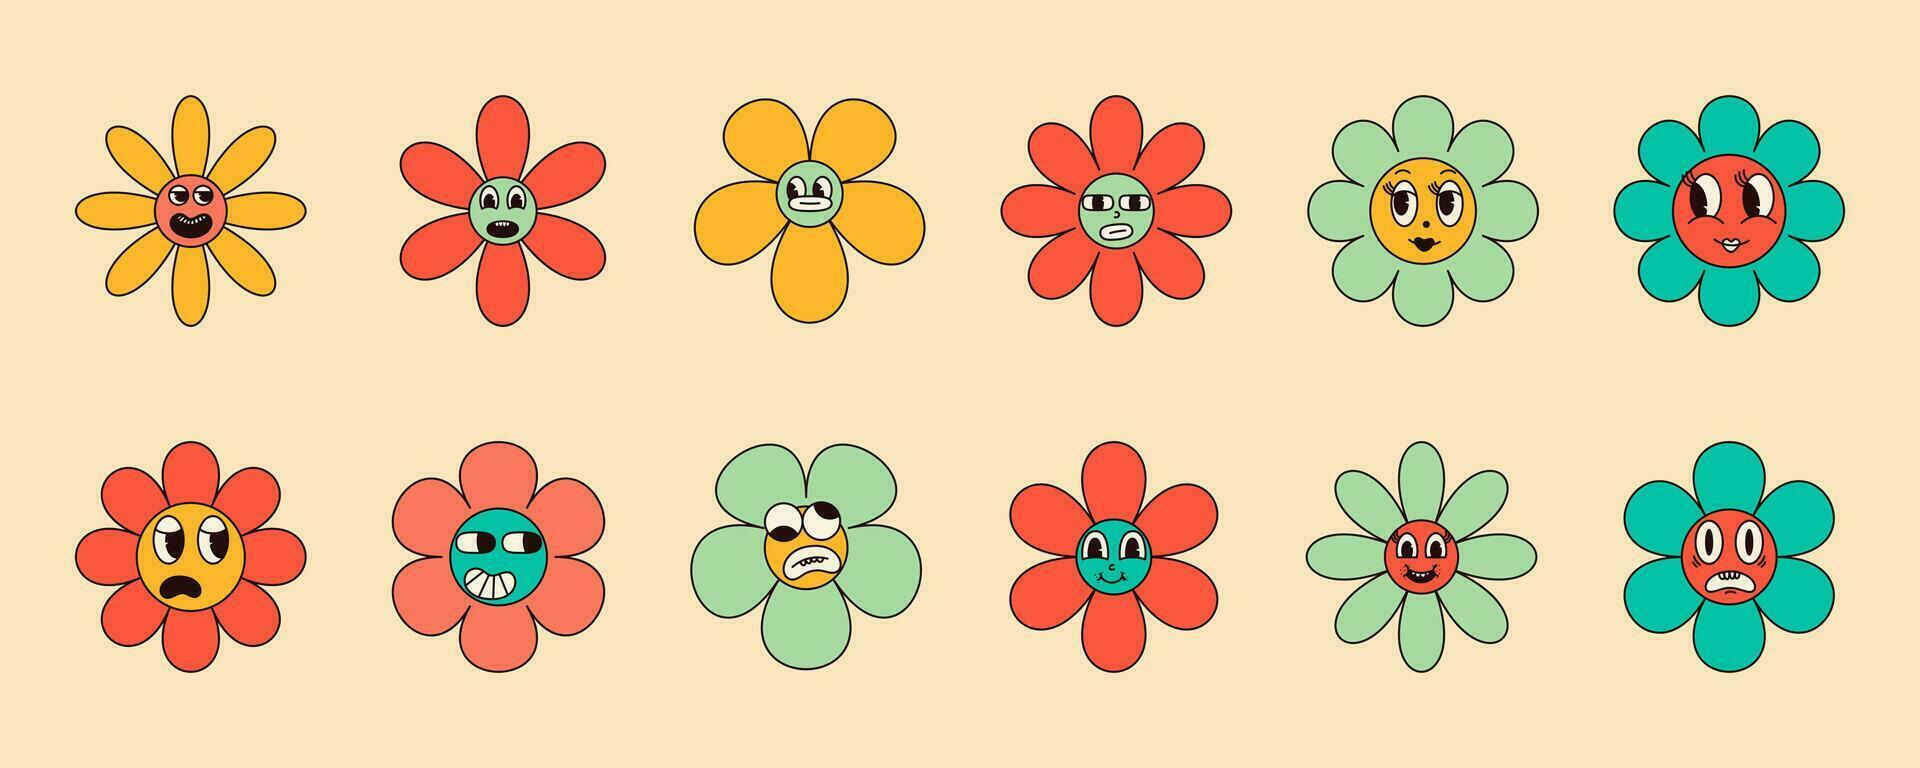 conjunto de 70s maravilloso margarita flores con gracioso caras en hippie retro estilo. vector ilustración